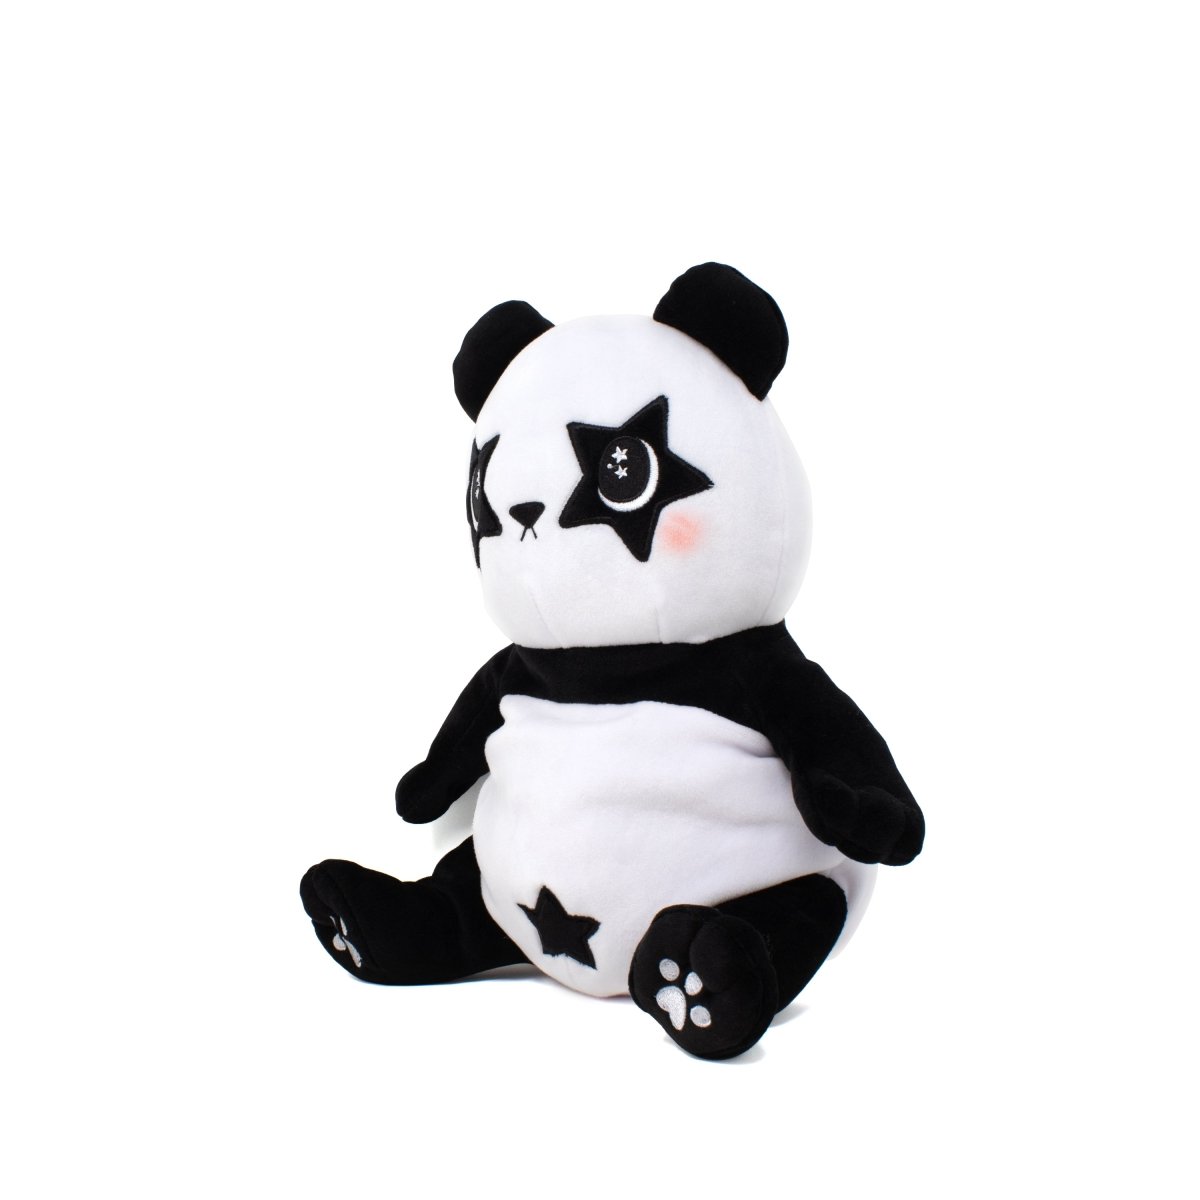 Pandy the Panda Plushie Starlight Buddy